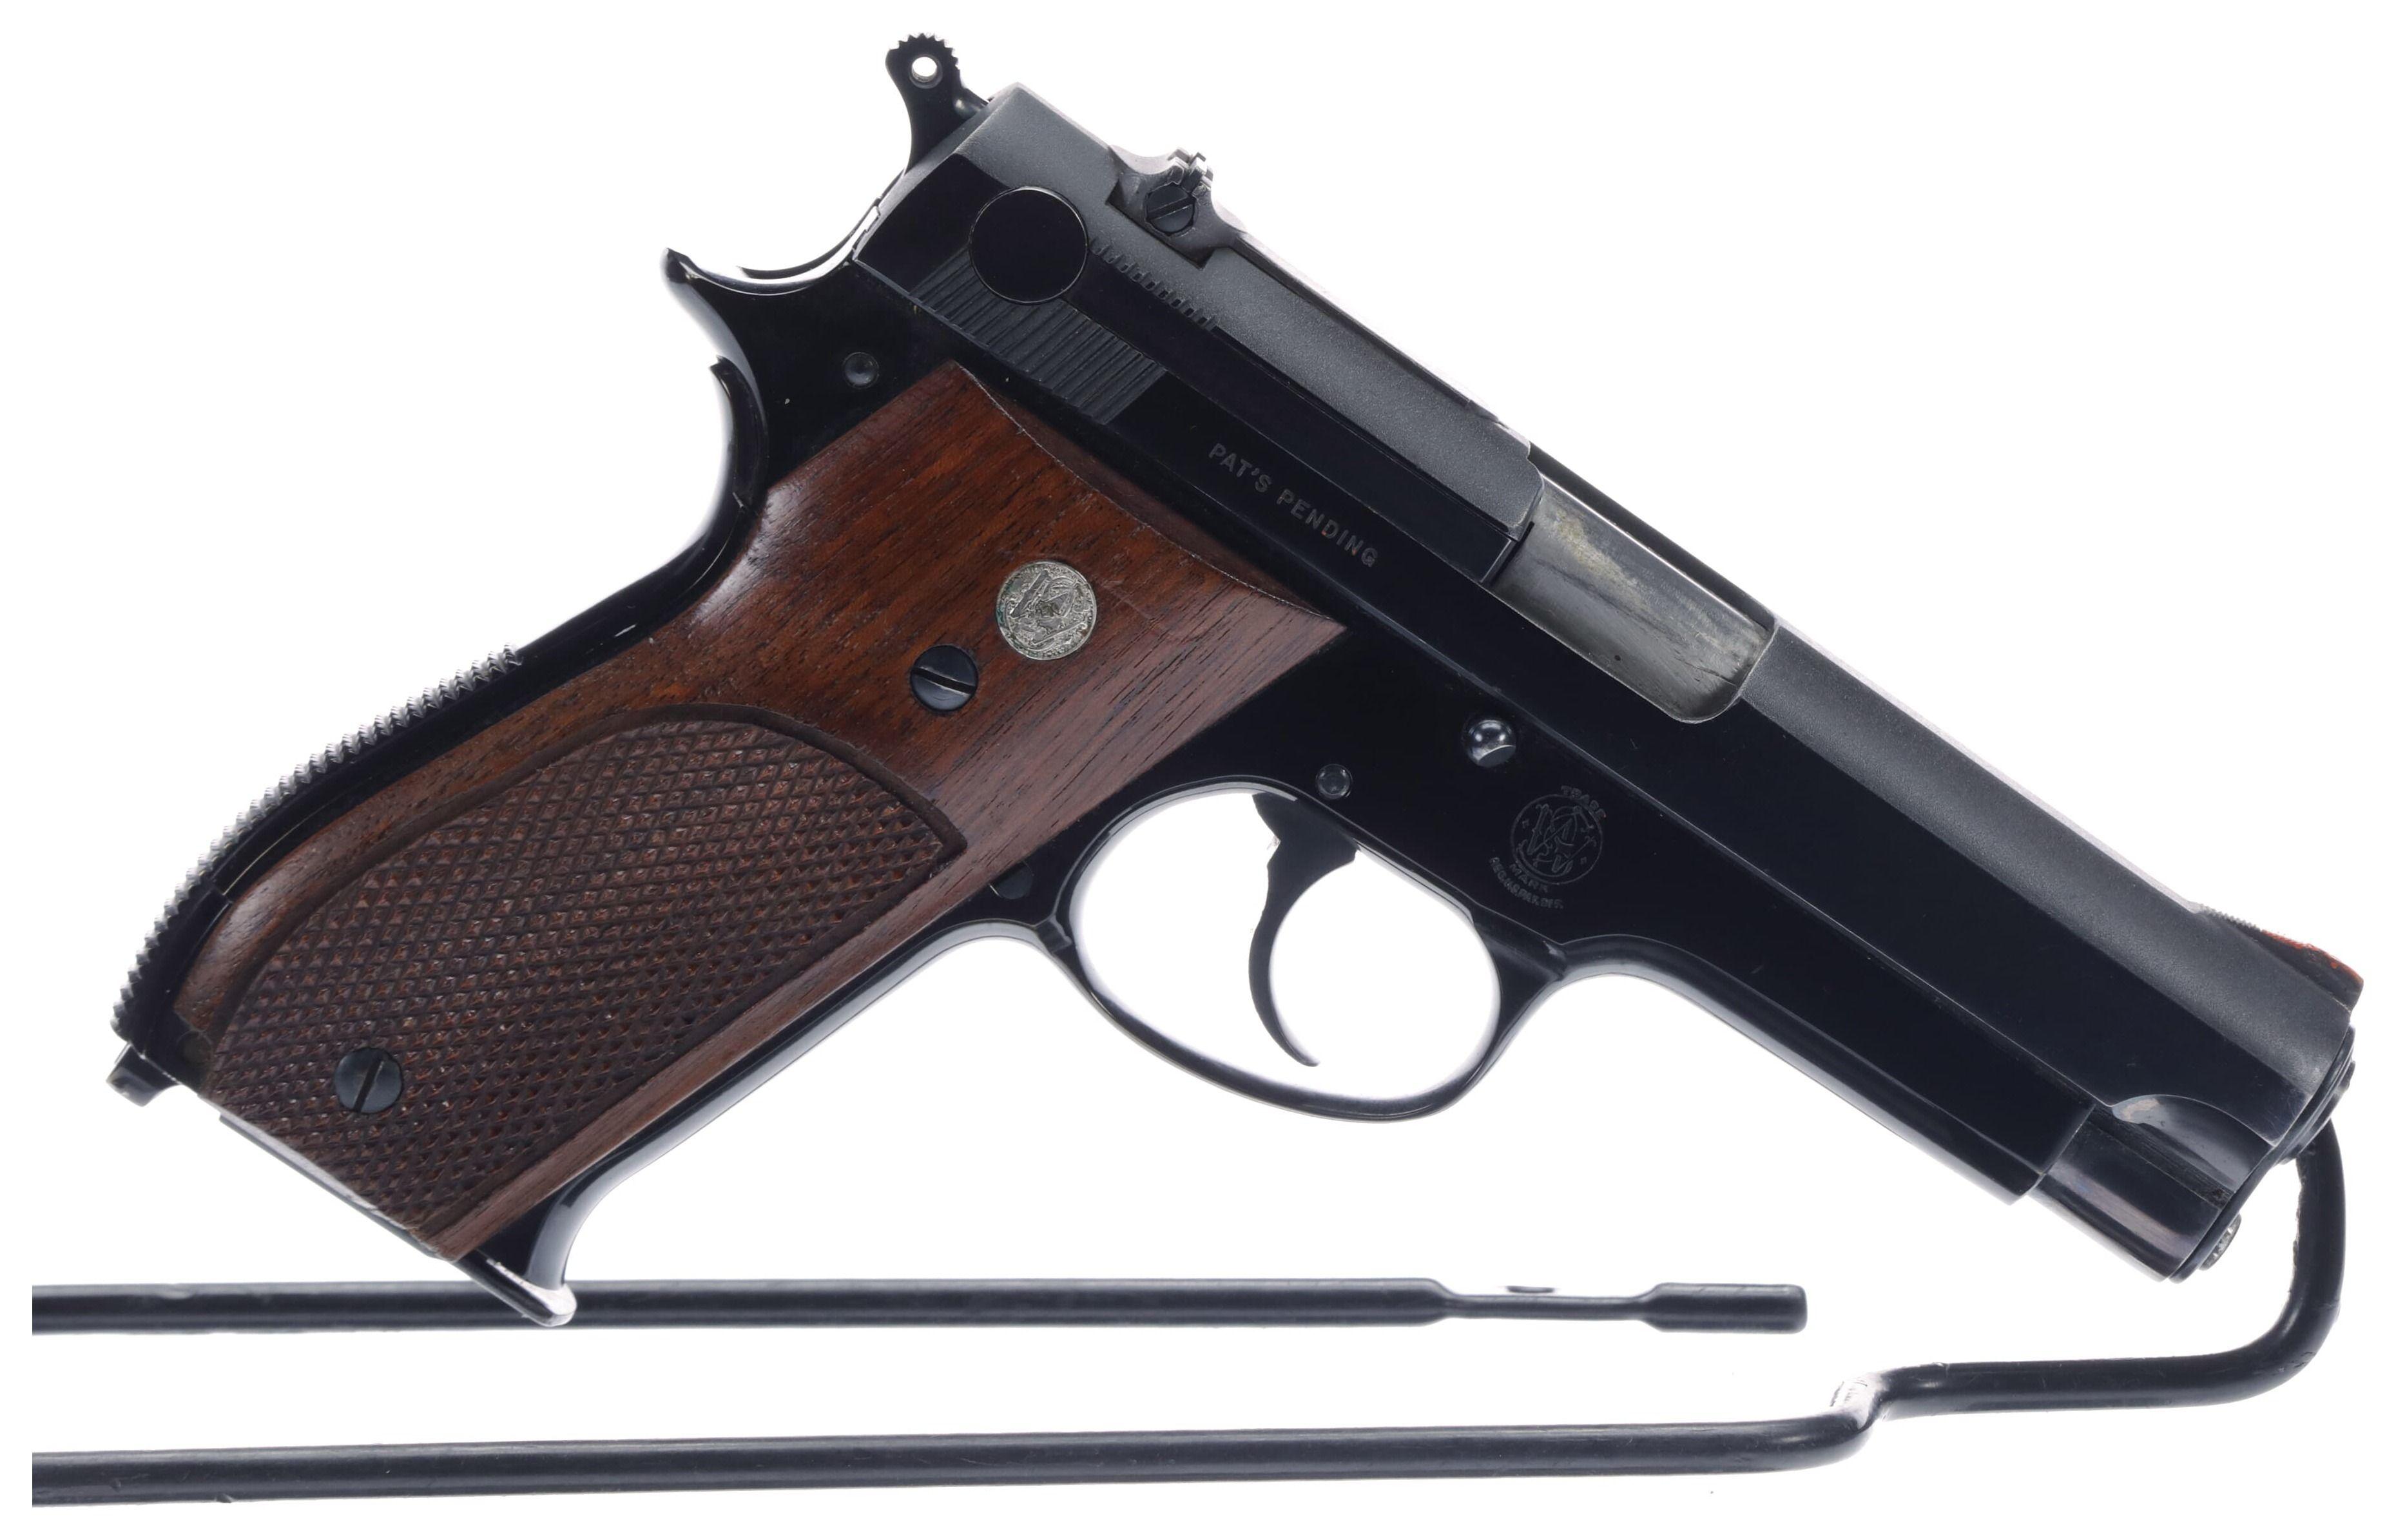 Smith & Wesson Pre-Model 39 Semi-Automatic Pistol with Box